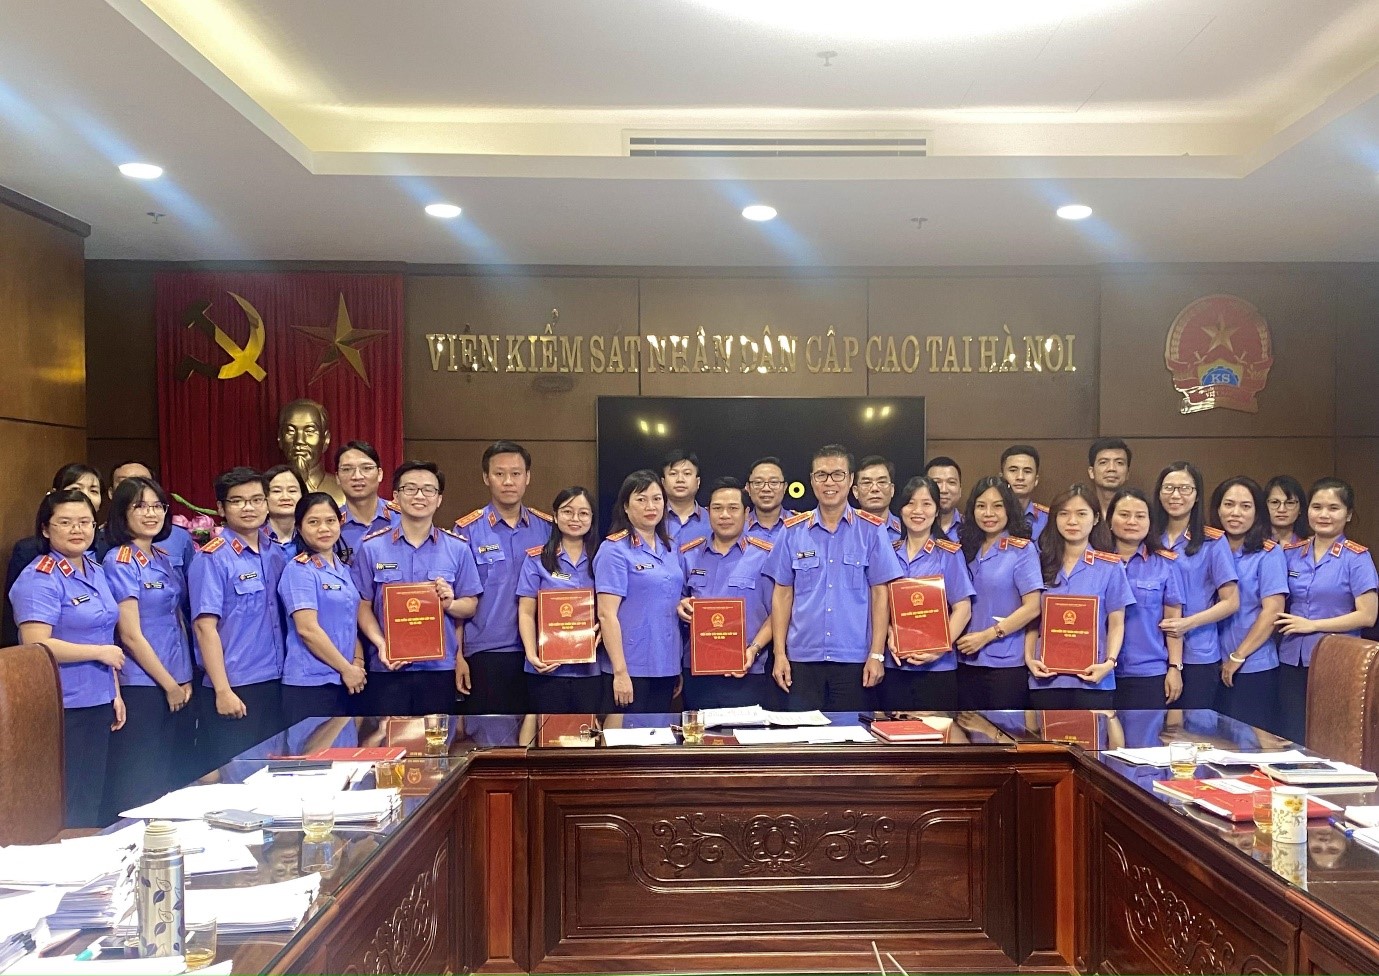 Văn phòng Viện kiểm sát nhân dân cấp cao tại Hà Nội tổ chức cuộc thi “Xây dựng sơ đồ tư duy trong báo cáo kết quả nghiên cứu án”